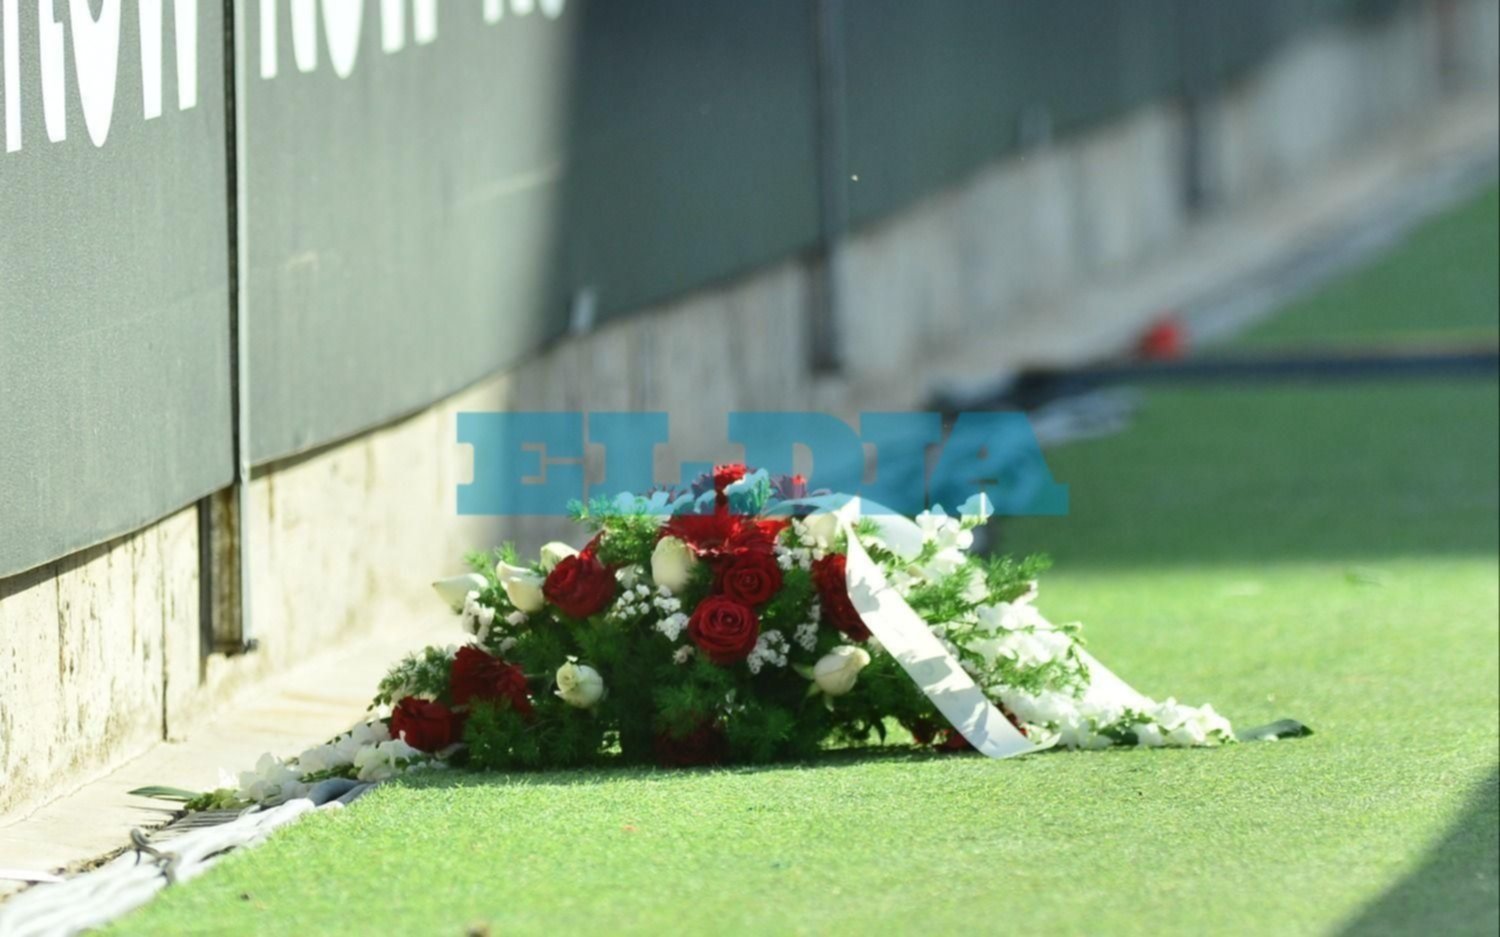 Flores, lágrimas, bandera y cantito: emotivo homenaje al Pipi Alonso